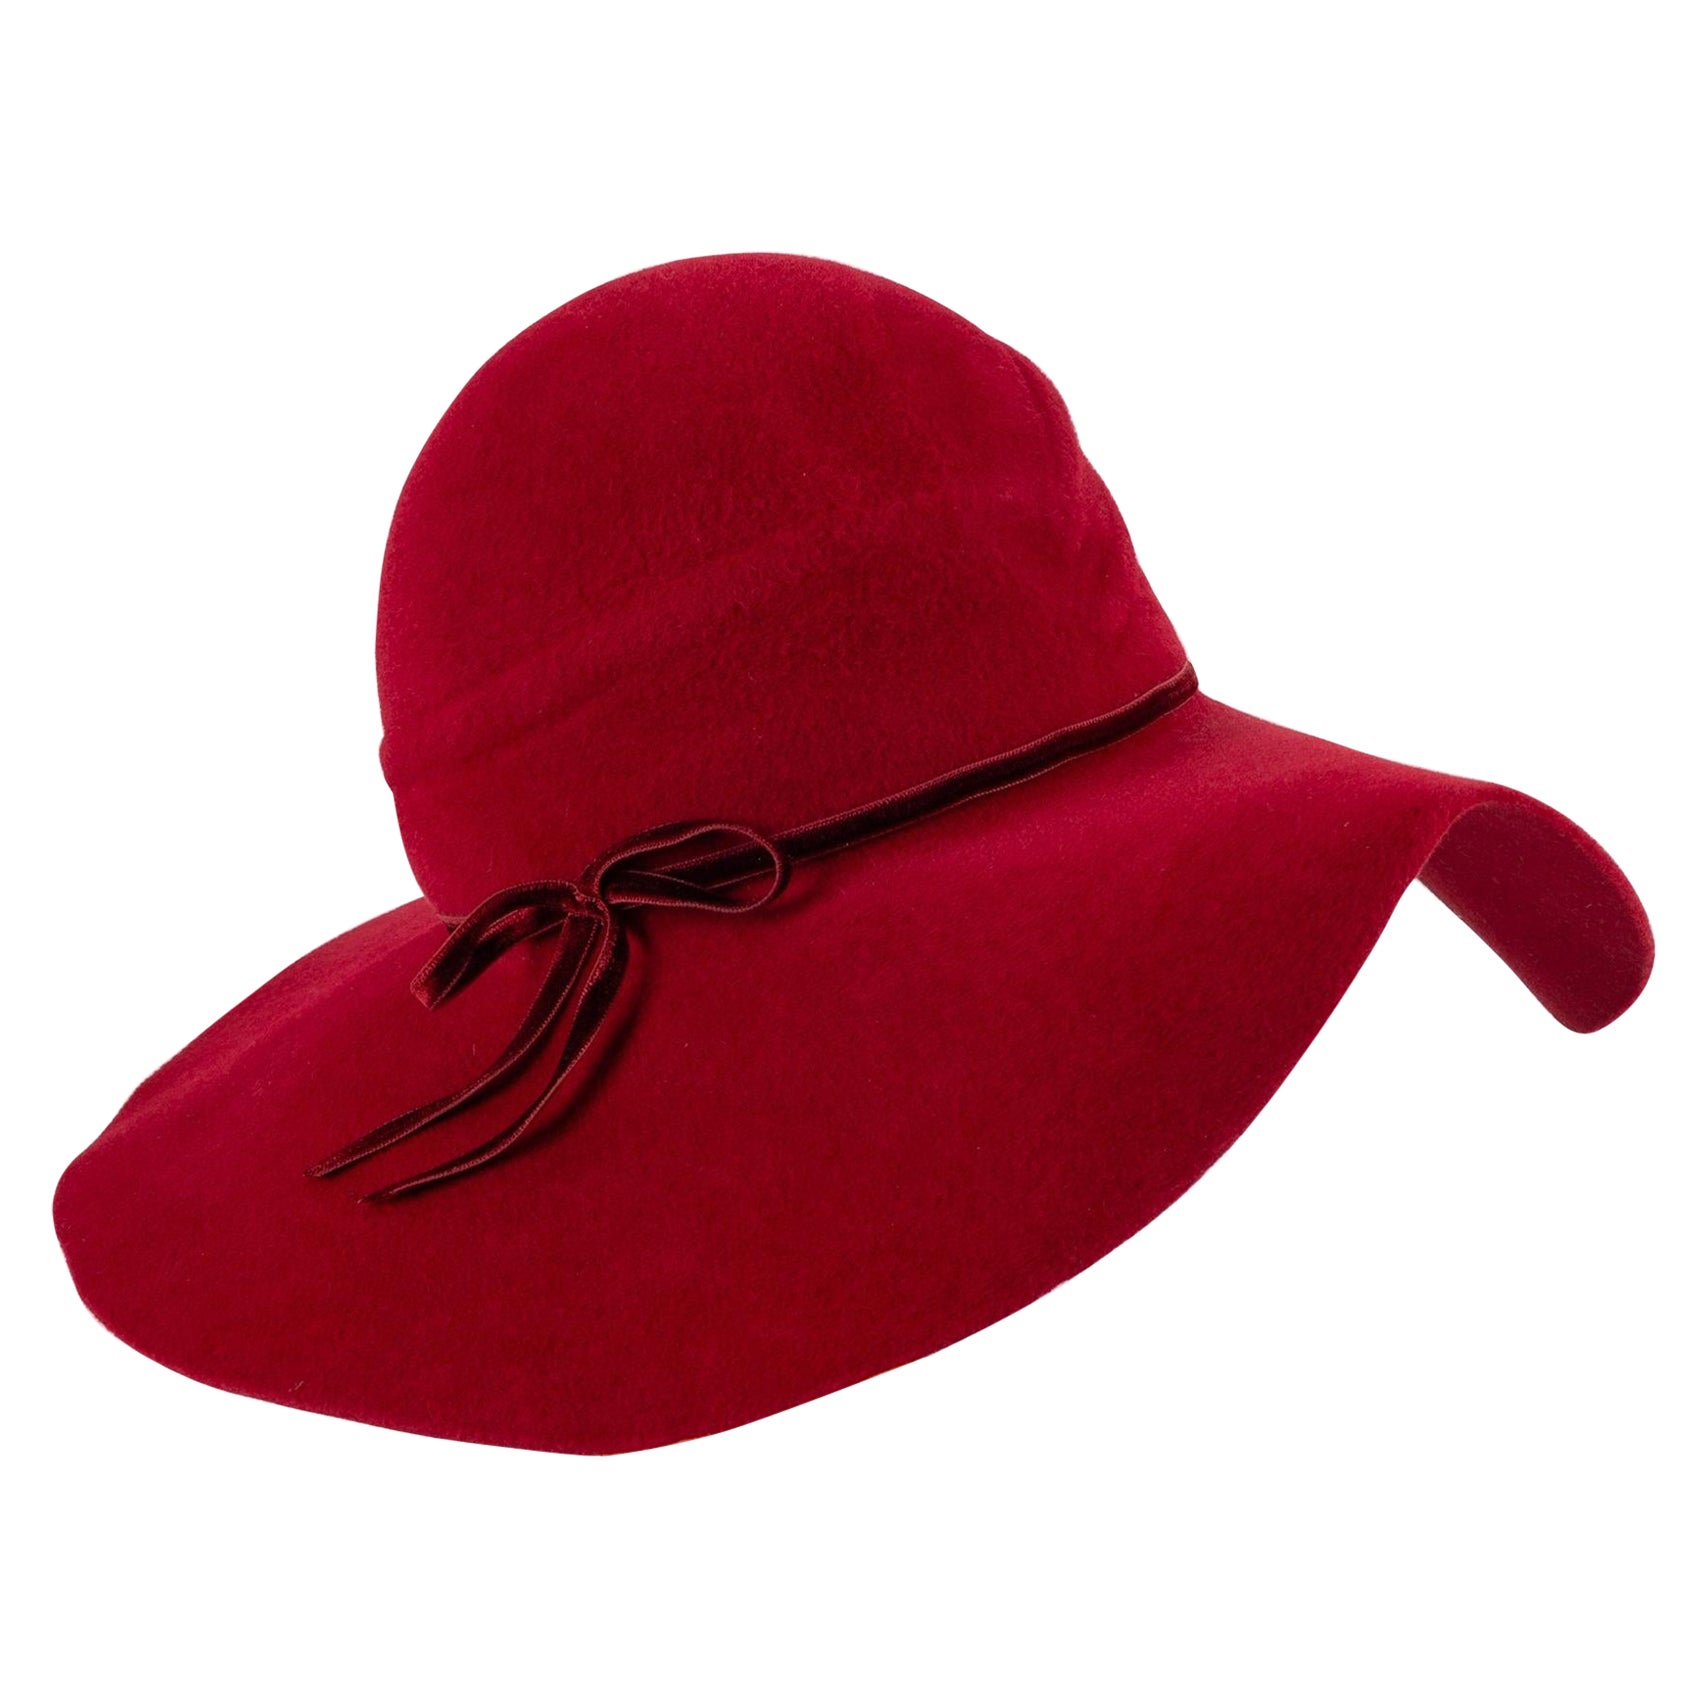 Marie Mercié Red Felt Hat For Sale